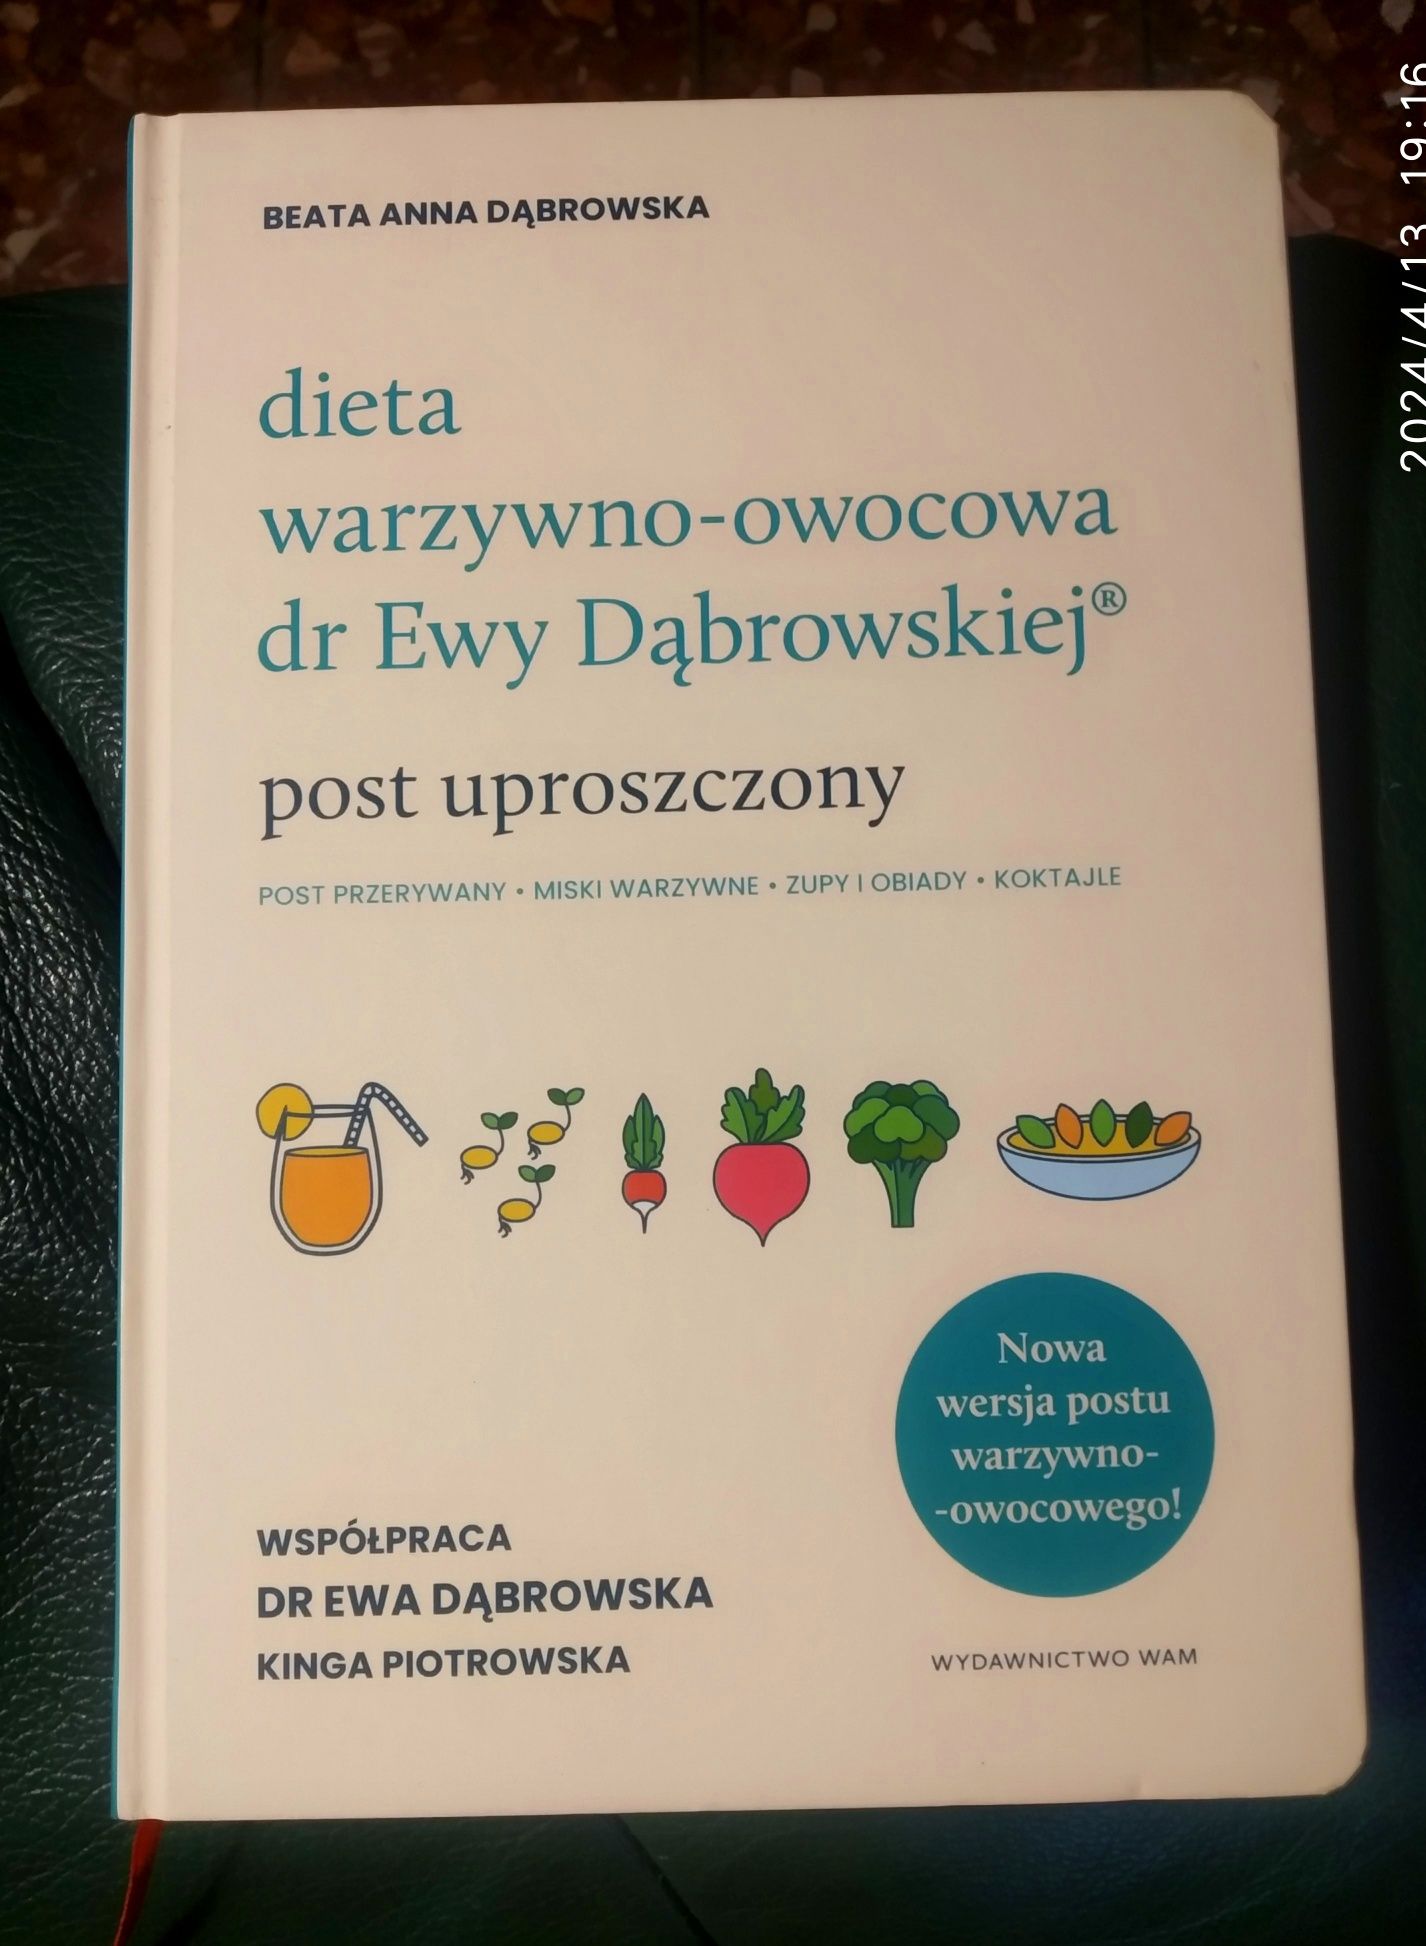 Dieta warzywno-owocowa post uproszczony dr Ewy Dąbrowskiej